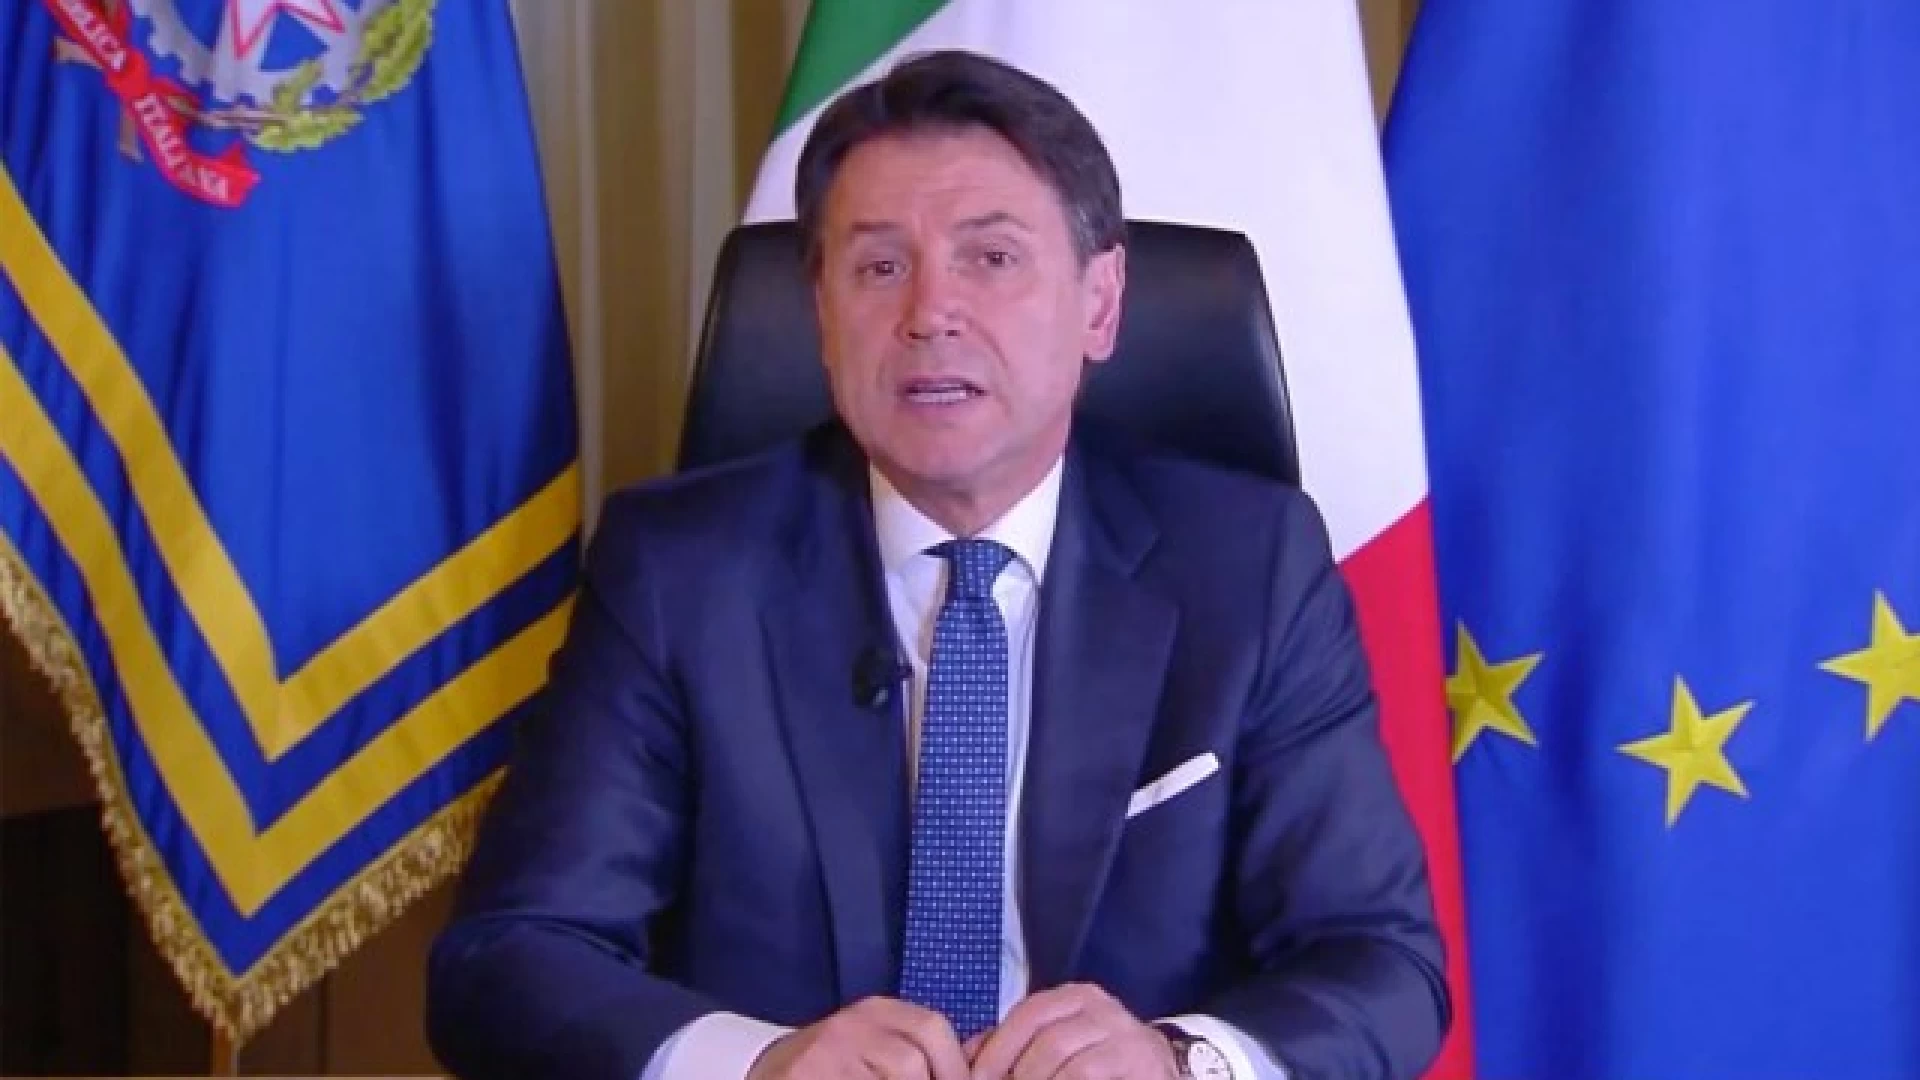 CORONAVIRUS: L’Italia chiude le attività commerciali. Ferie forzate e possibili nuovi provvedimenti dopo i primi 15 giorni. L'annuncio di Conte